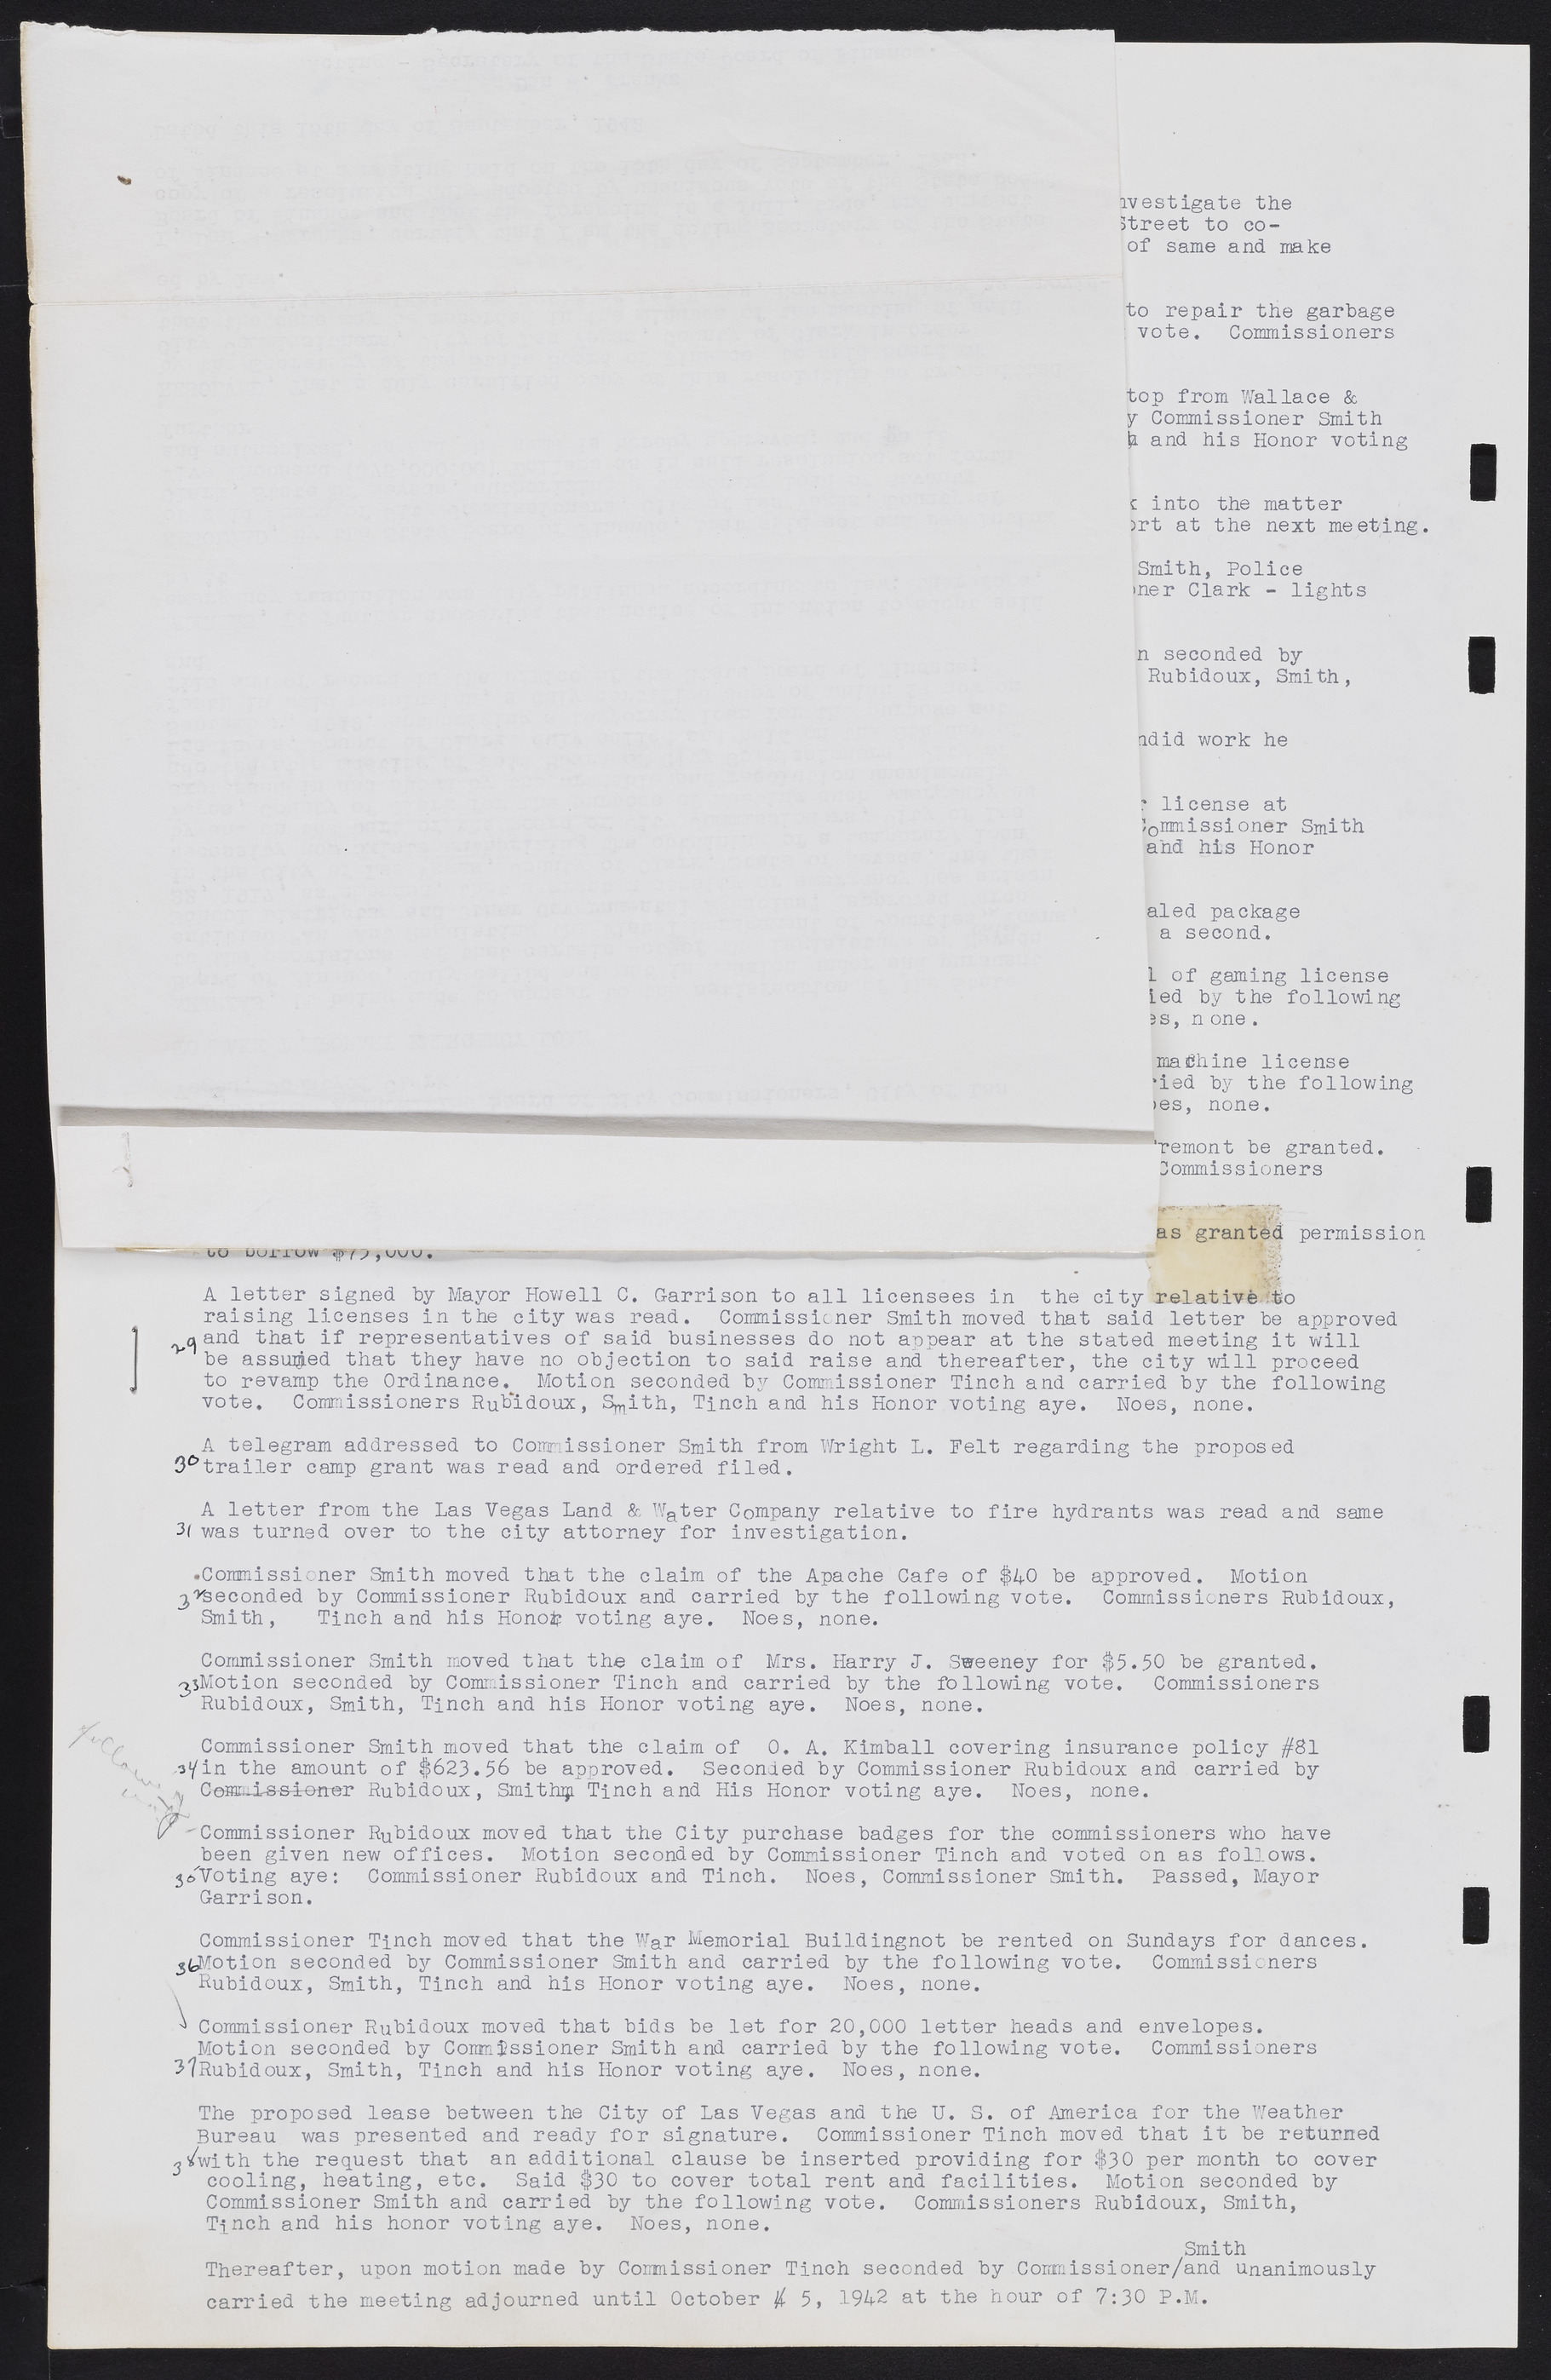 Las Vegas City Commission Minutes, August 11, 1942 to December 30, 1946, lvc000005-25